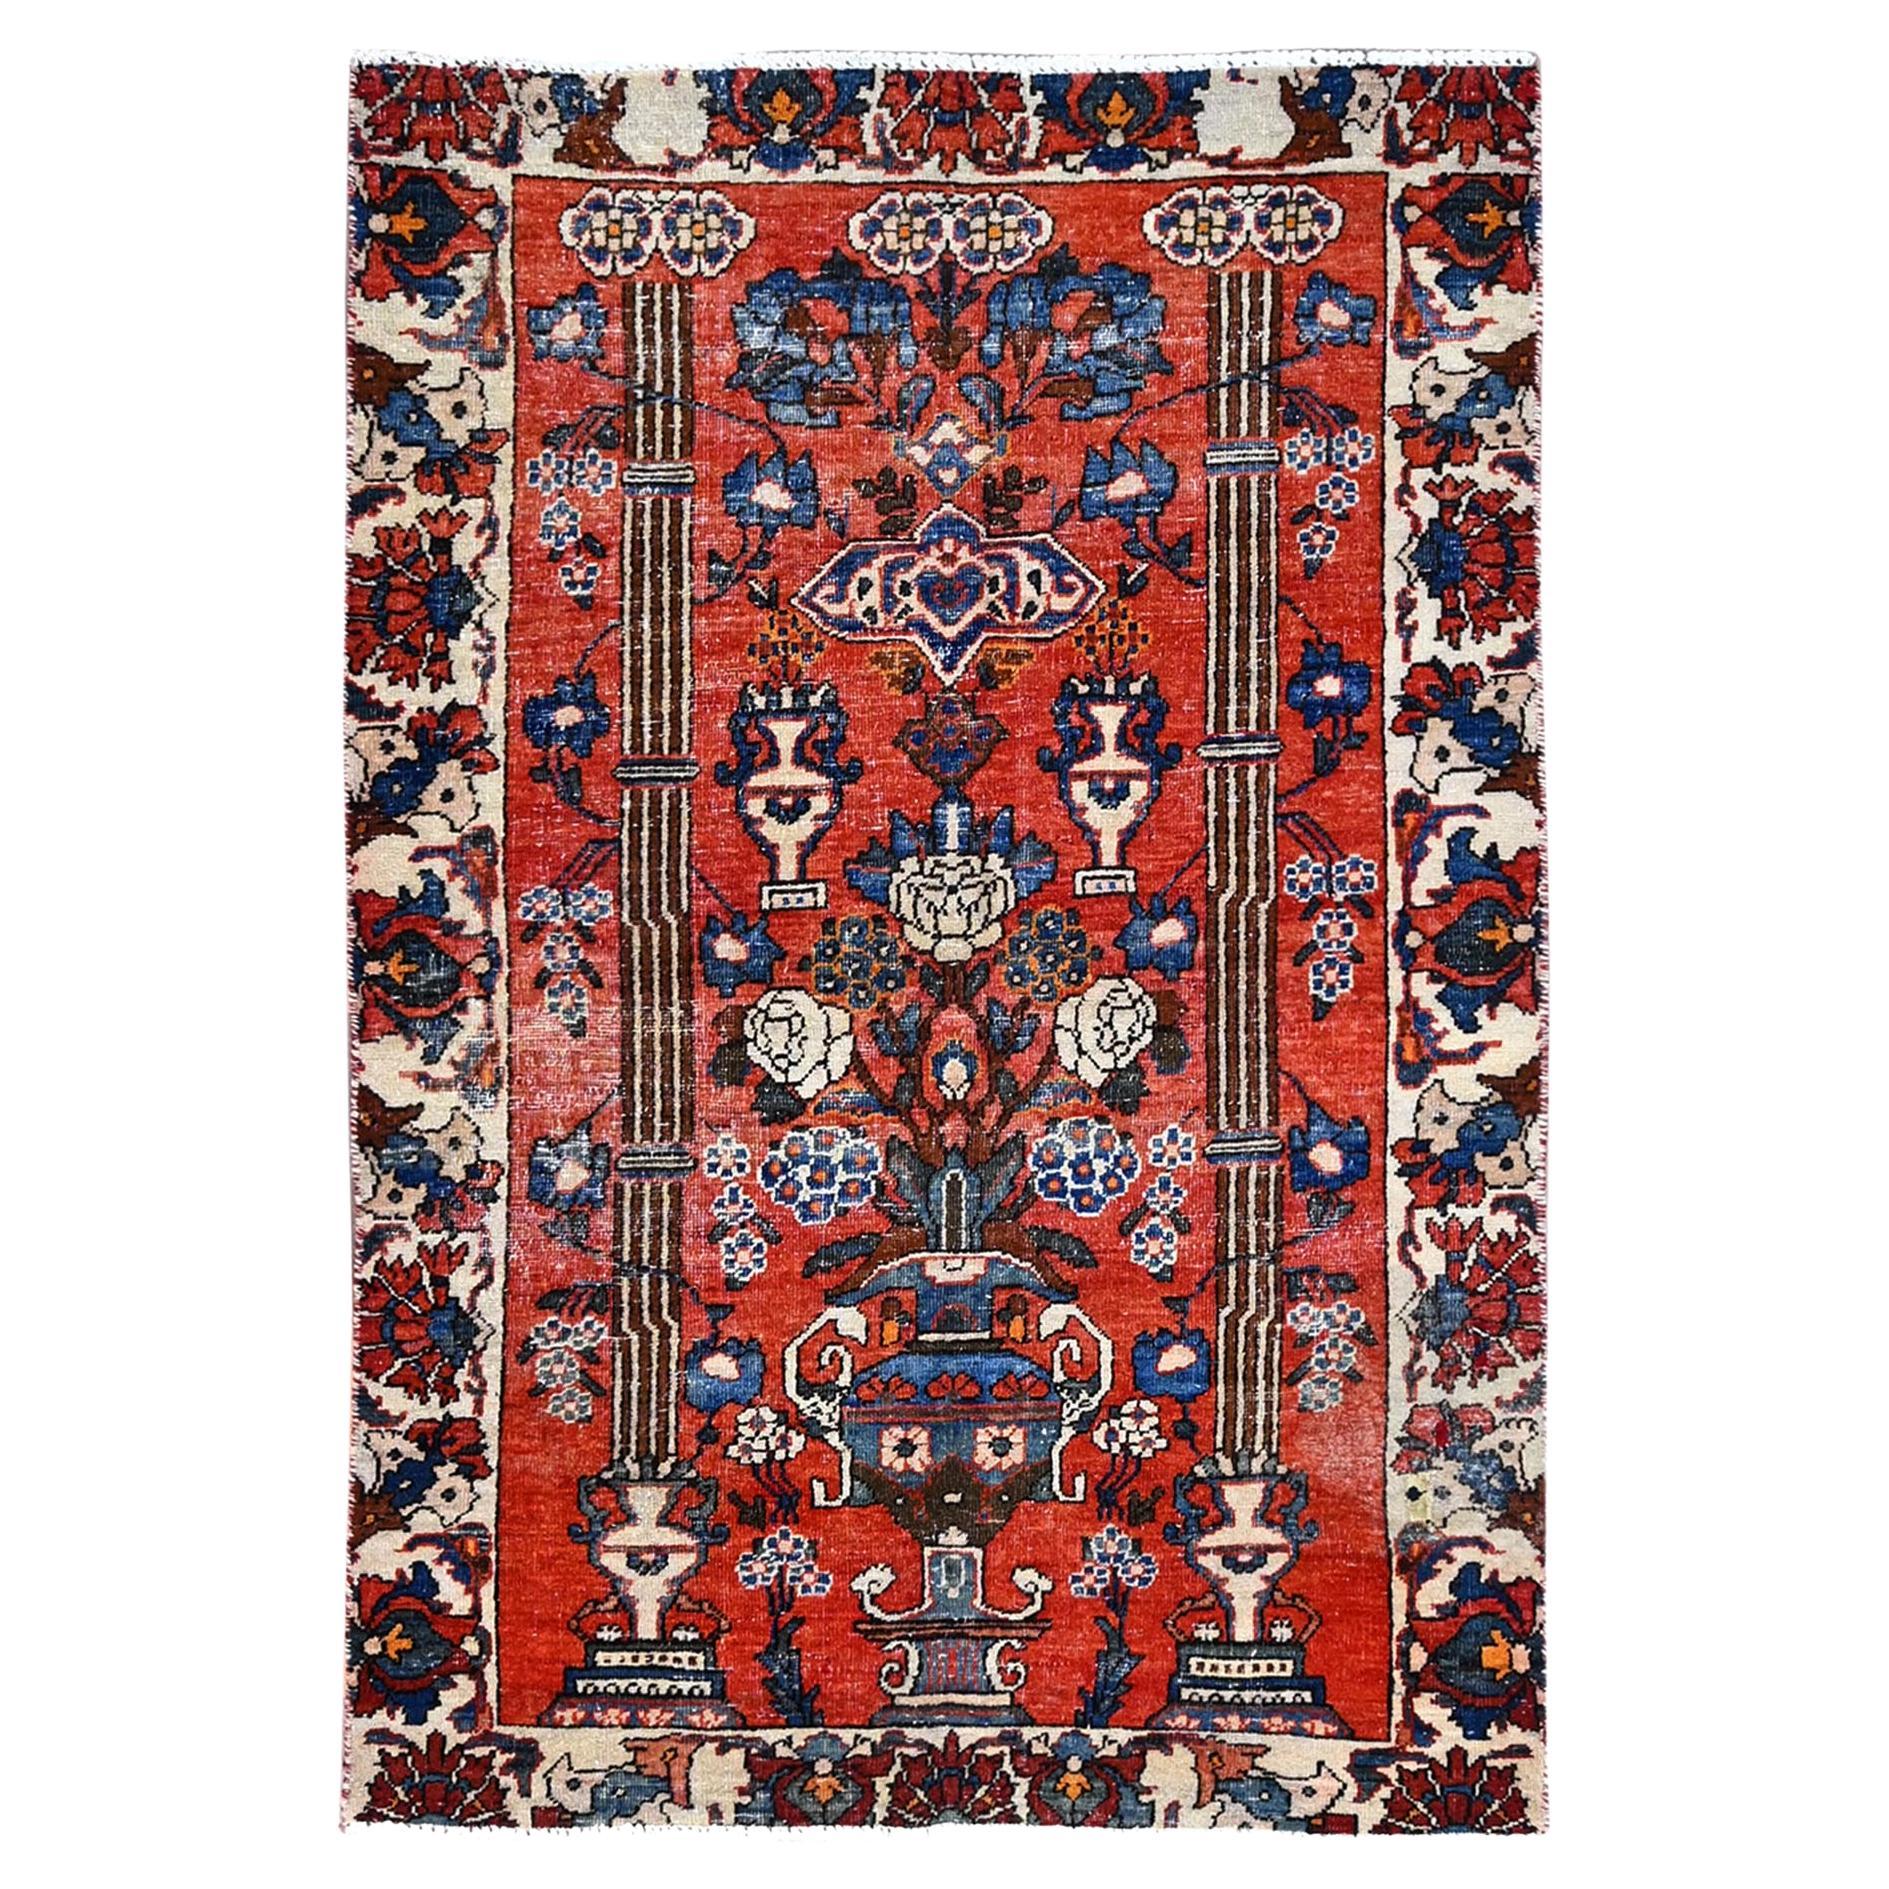 Roter handgeknüpfter alter persischer Bakhtiari-Teppich aus weicher Wolle, professionell gereinigt